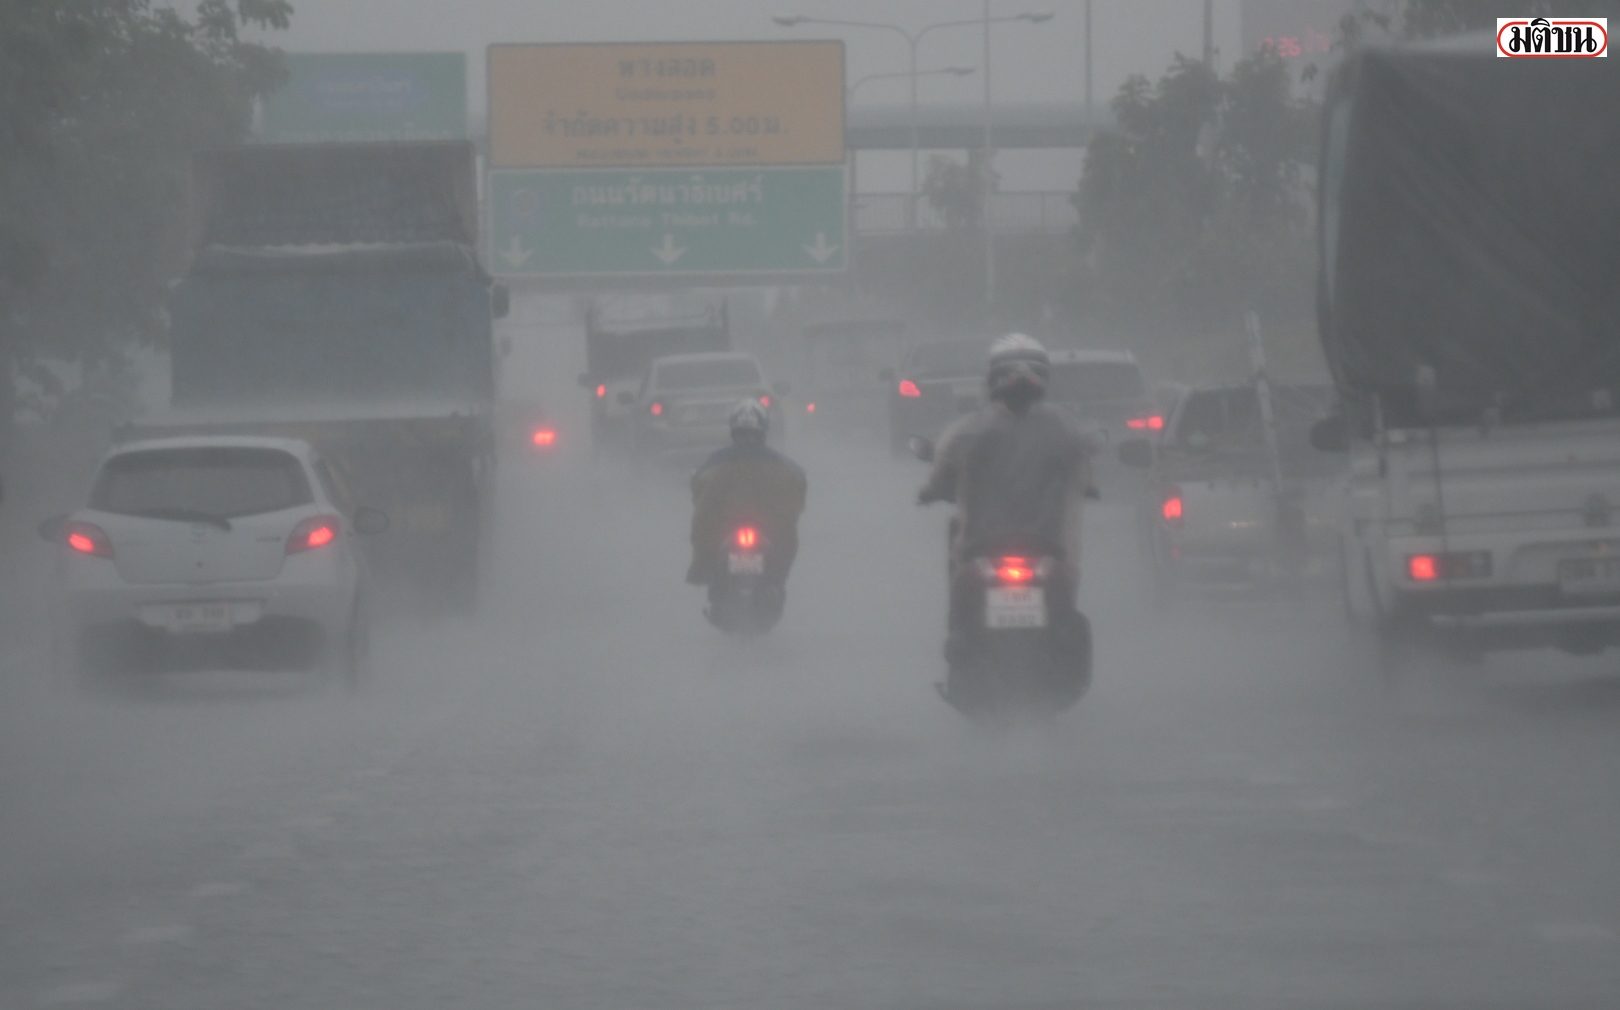 อุตุฯพยากรณ์อากาศ ทั่วทุกภาคยังเจอฝน 60-70% ยกเว้นภาคกลาง 40%